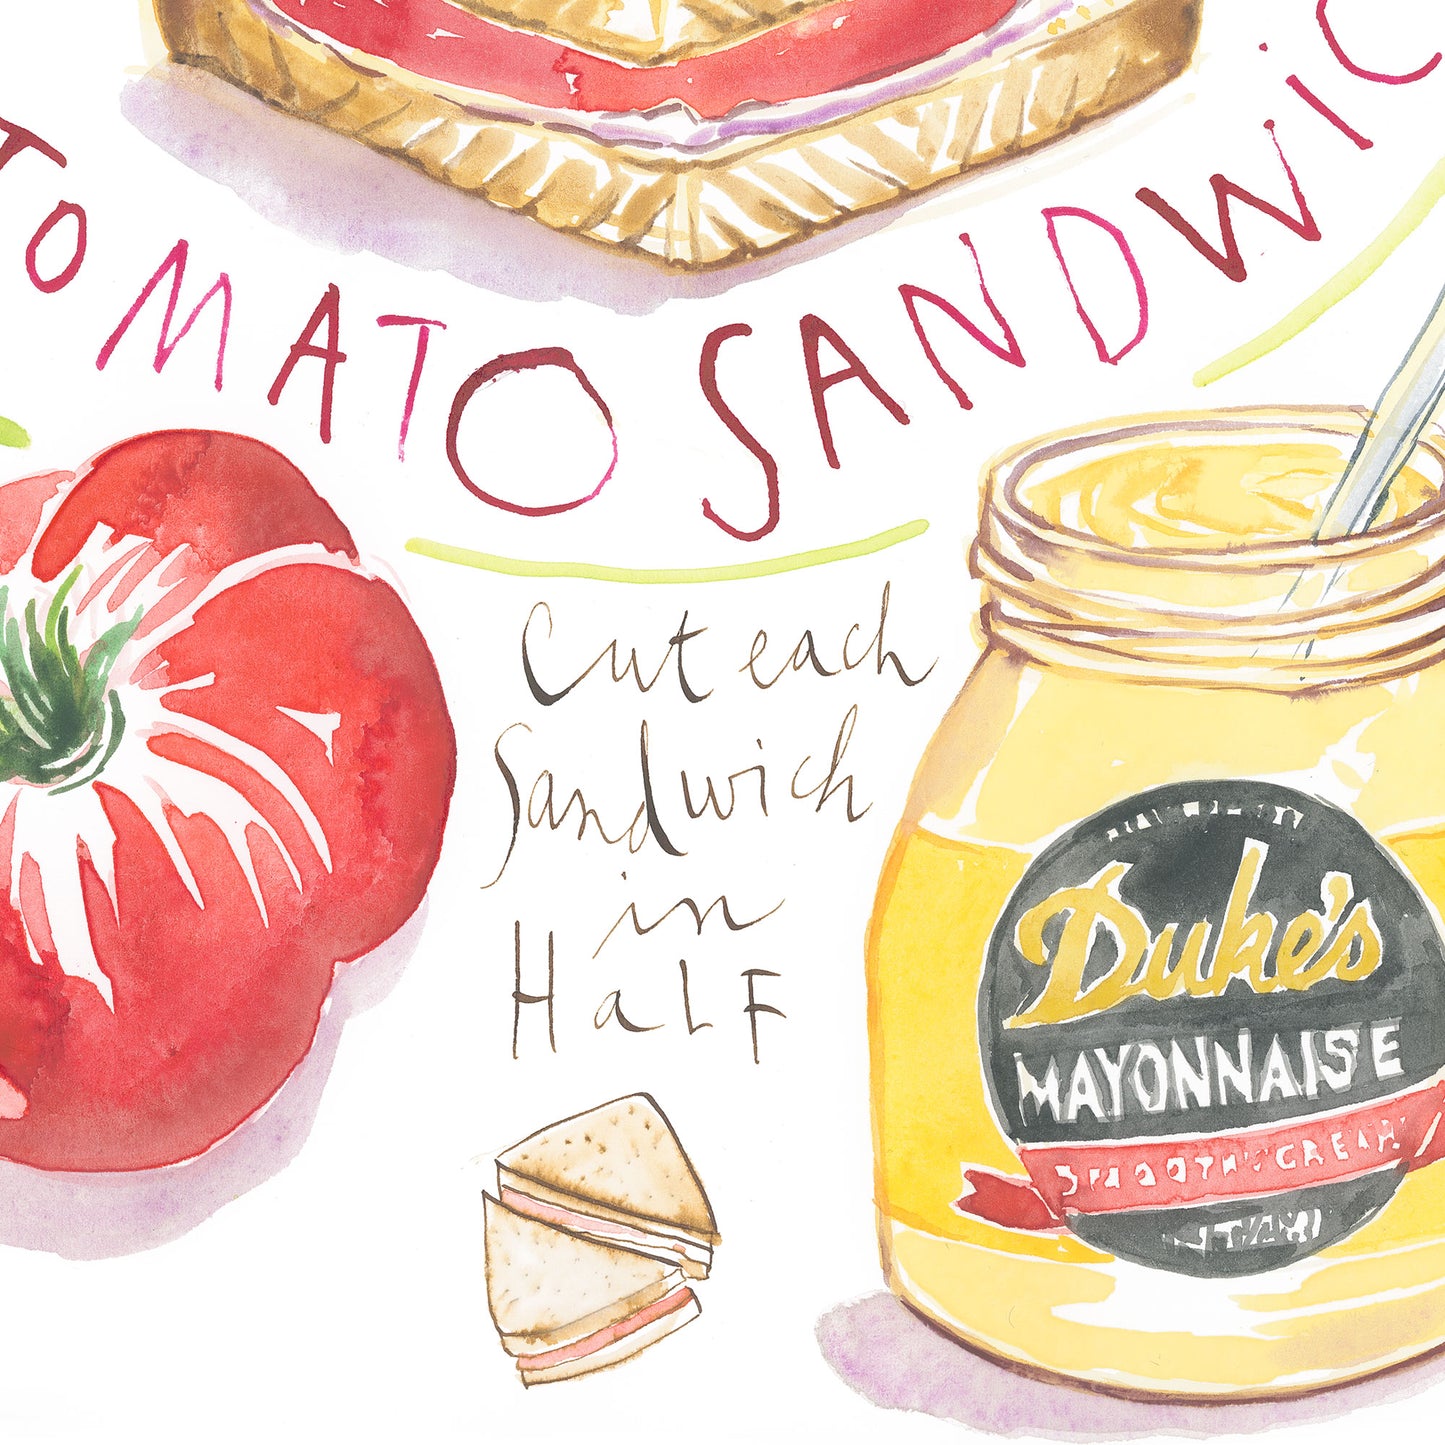 Tomato Sandwich recipe